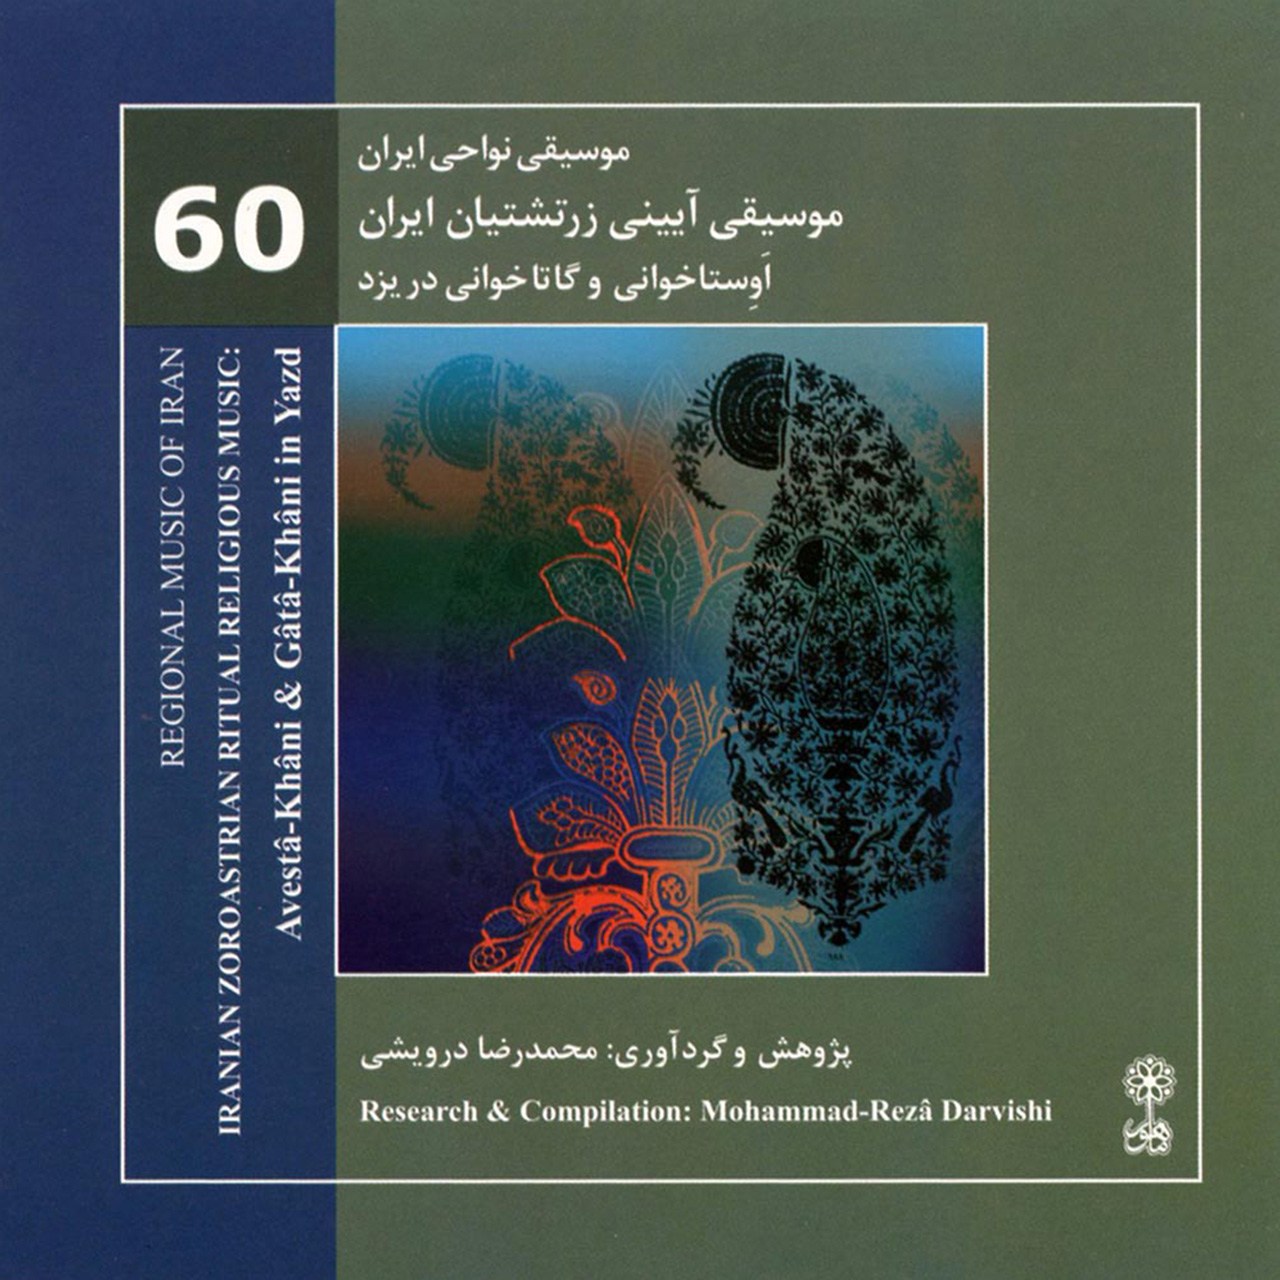 آلبوم موسیقی آیینی زرتشتیان ایران اثر محمدرضا درویشی